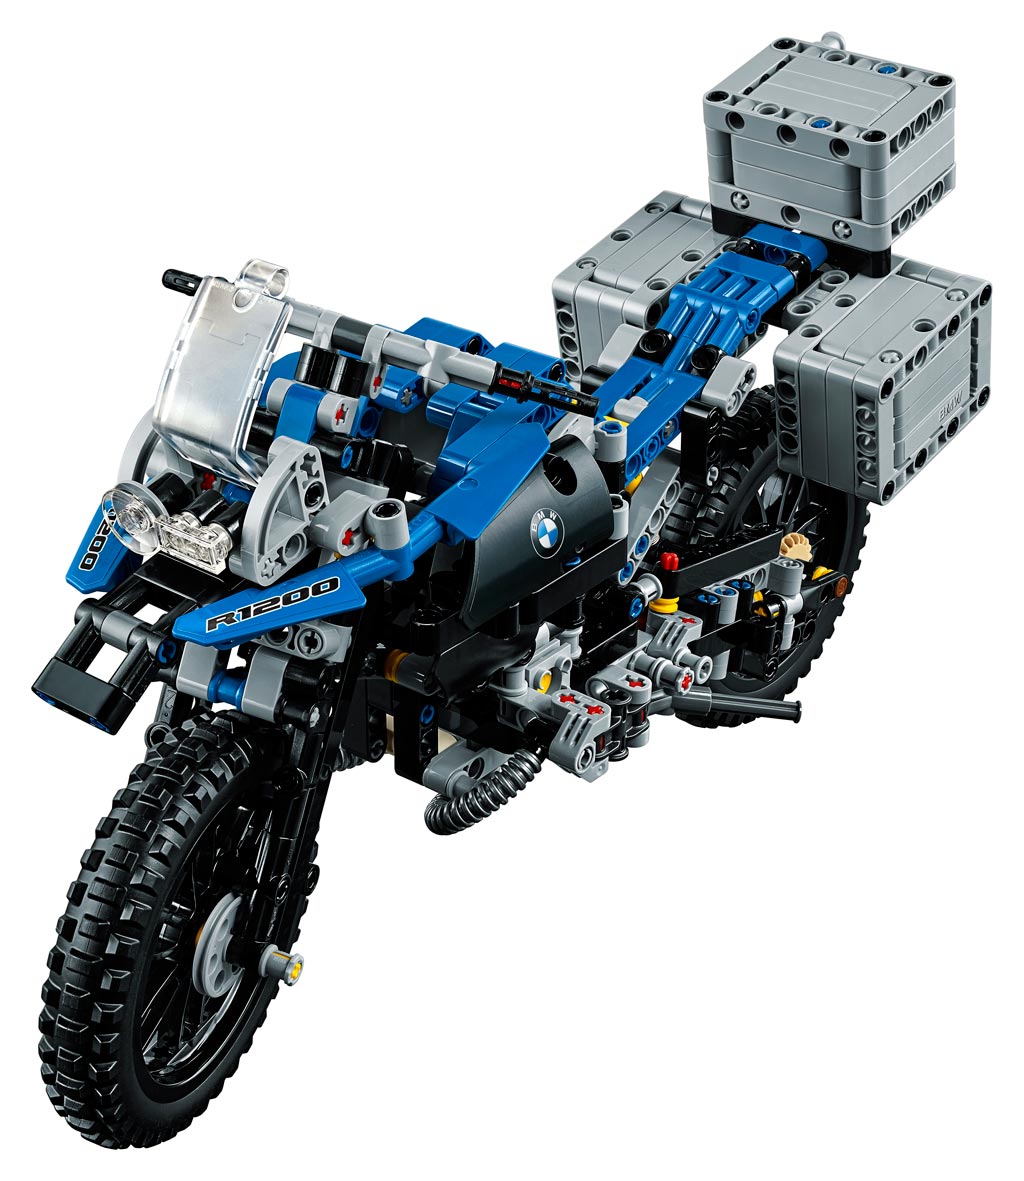 BMWR1200GS LEGO 03